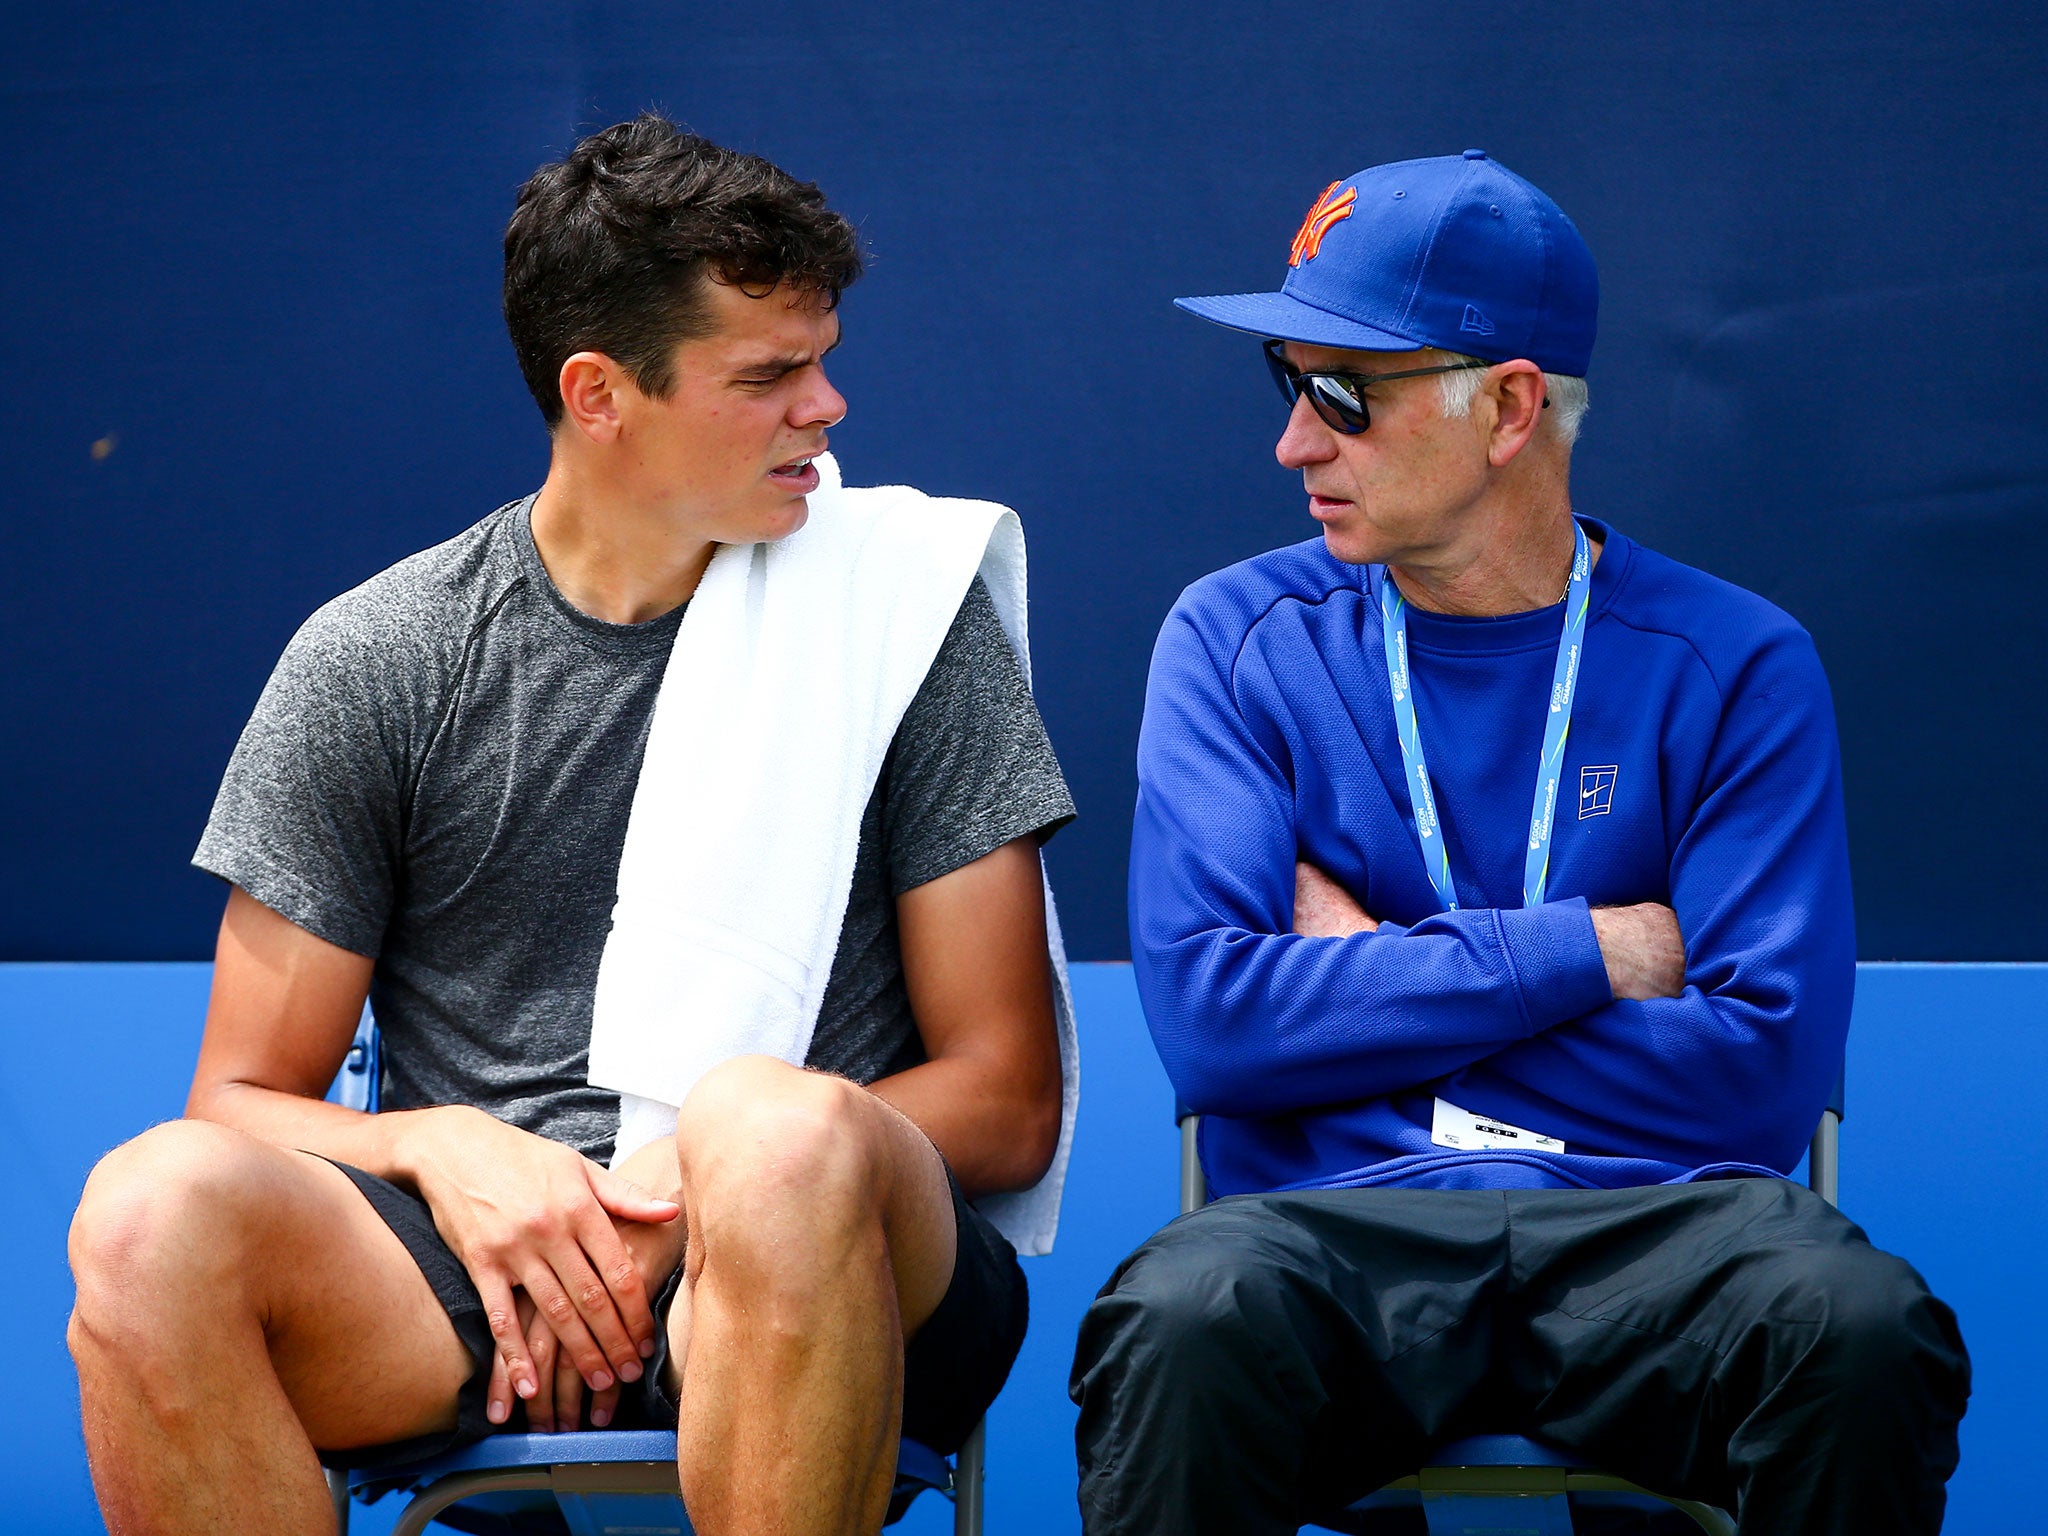 John McEnroe gives Milos Raonic some advice